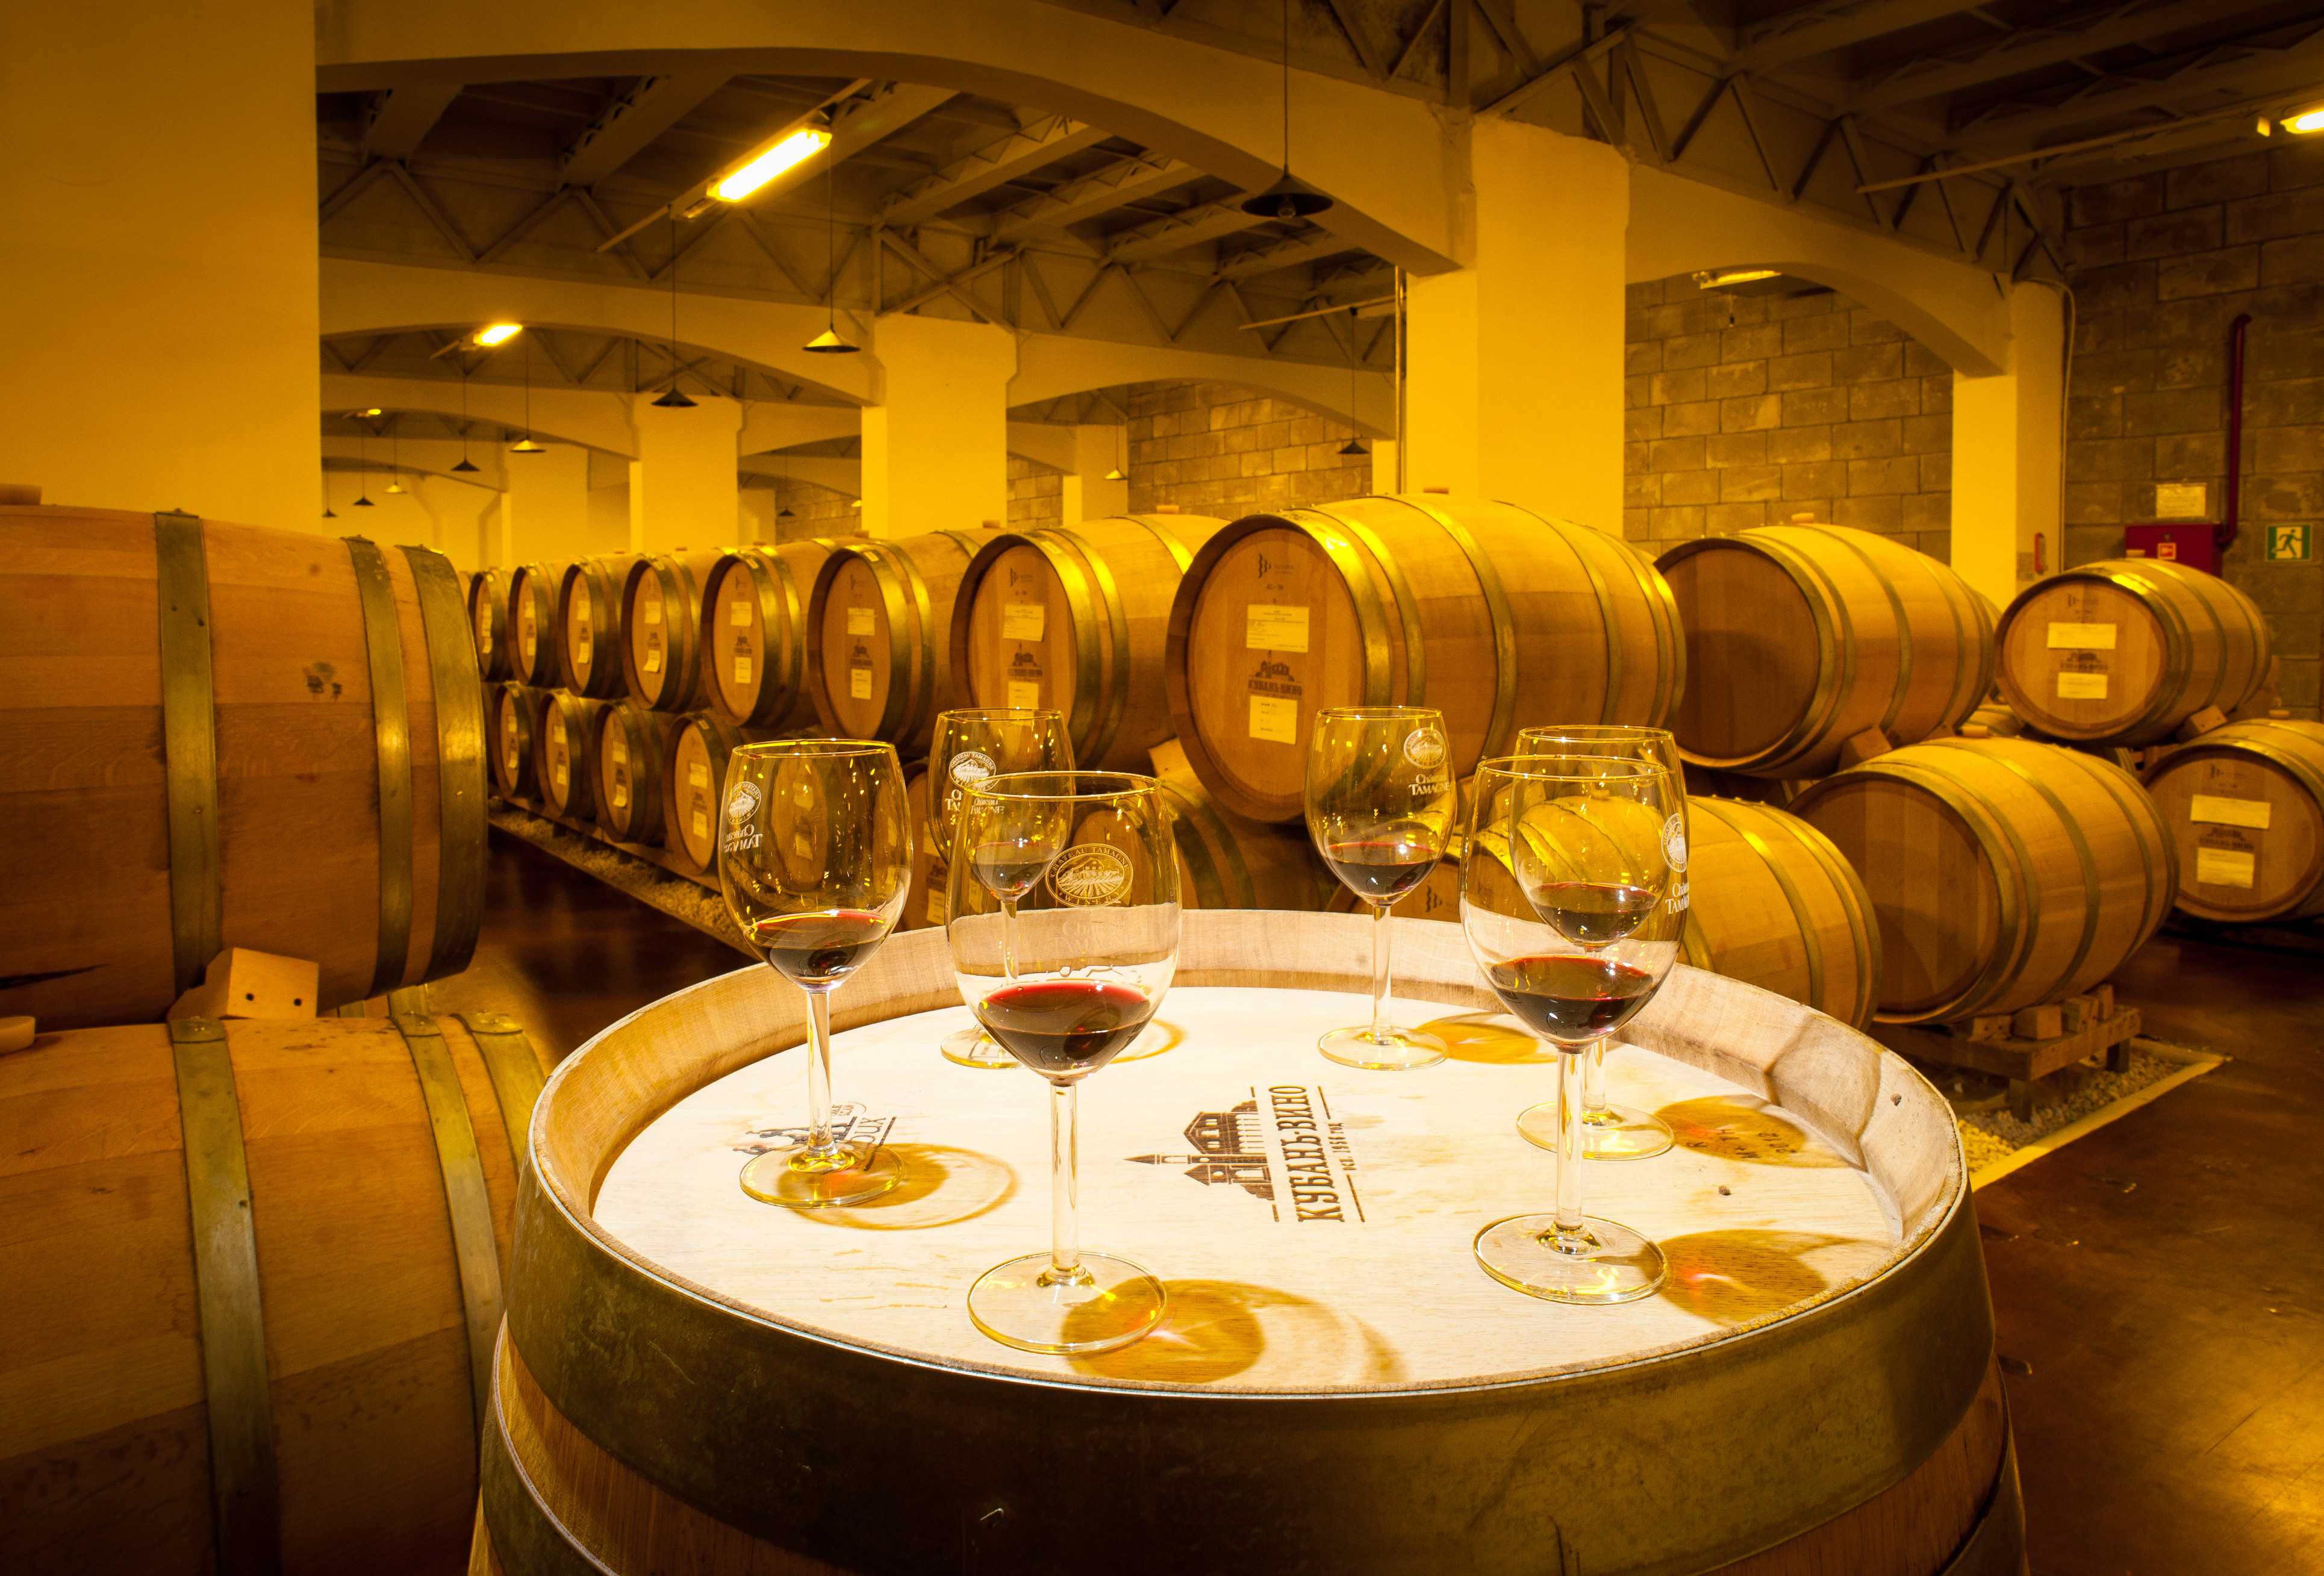 Организуем собственный винзавод: виноделия в промышленных масштабах